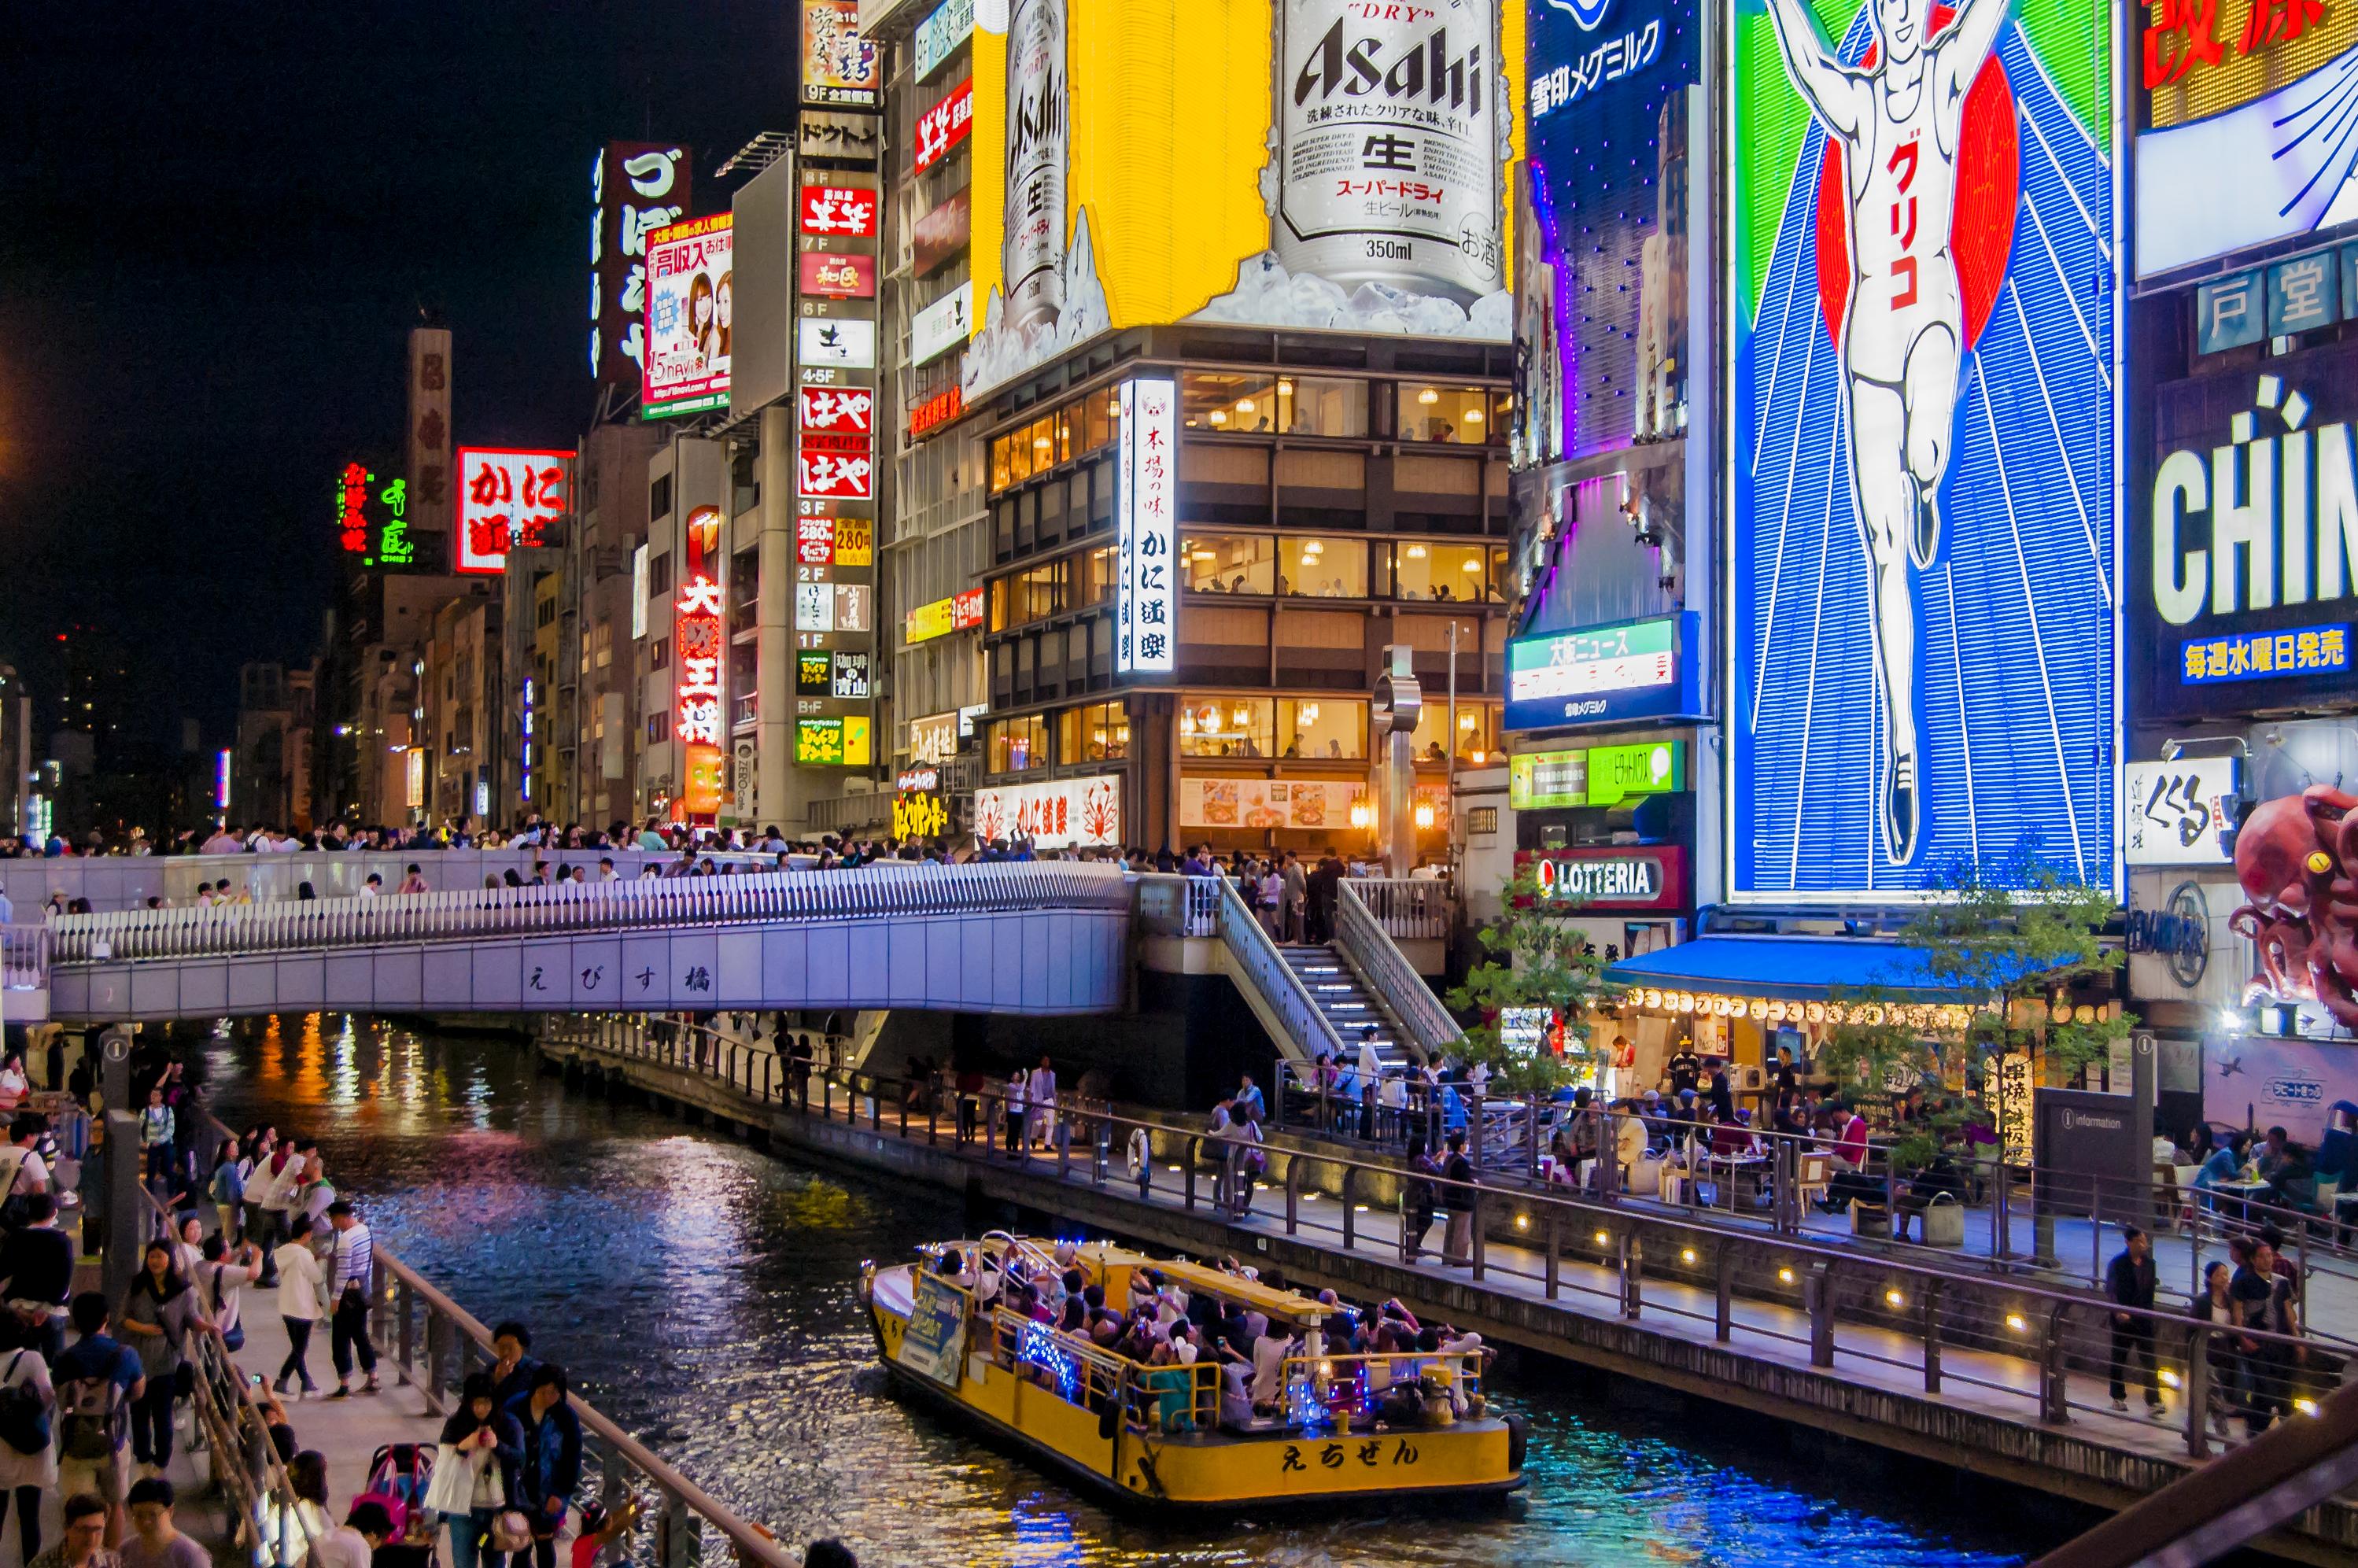 ¡Japón: el país donde nace el sol! Circuito de 12 días y 9 noches en Hoteles 4*  con Desayunos y Comidas. Incluye vuelos y traslados + Visitas